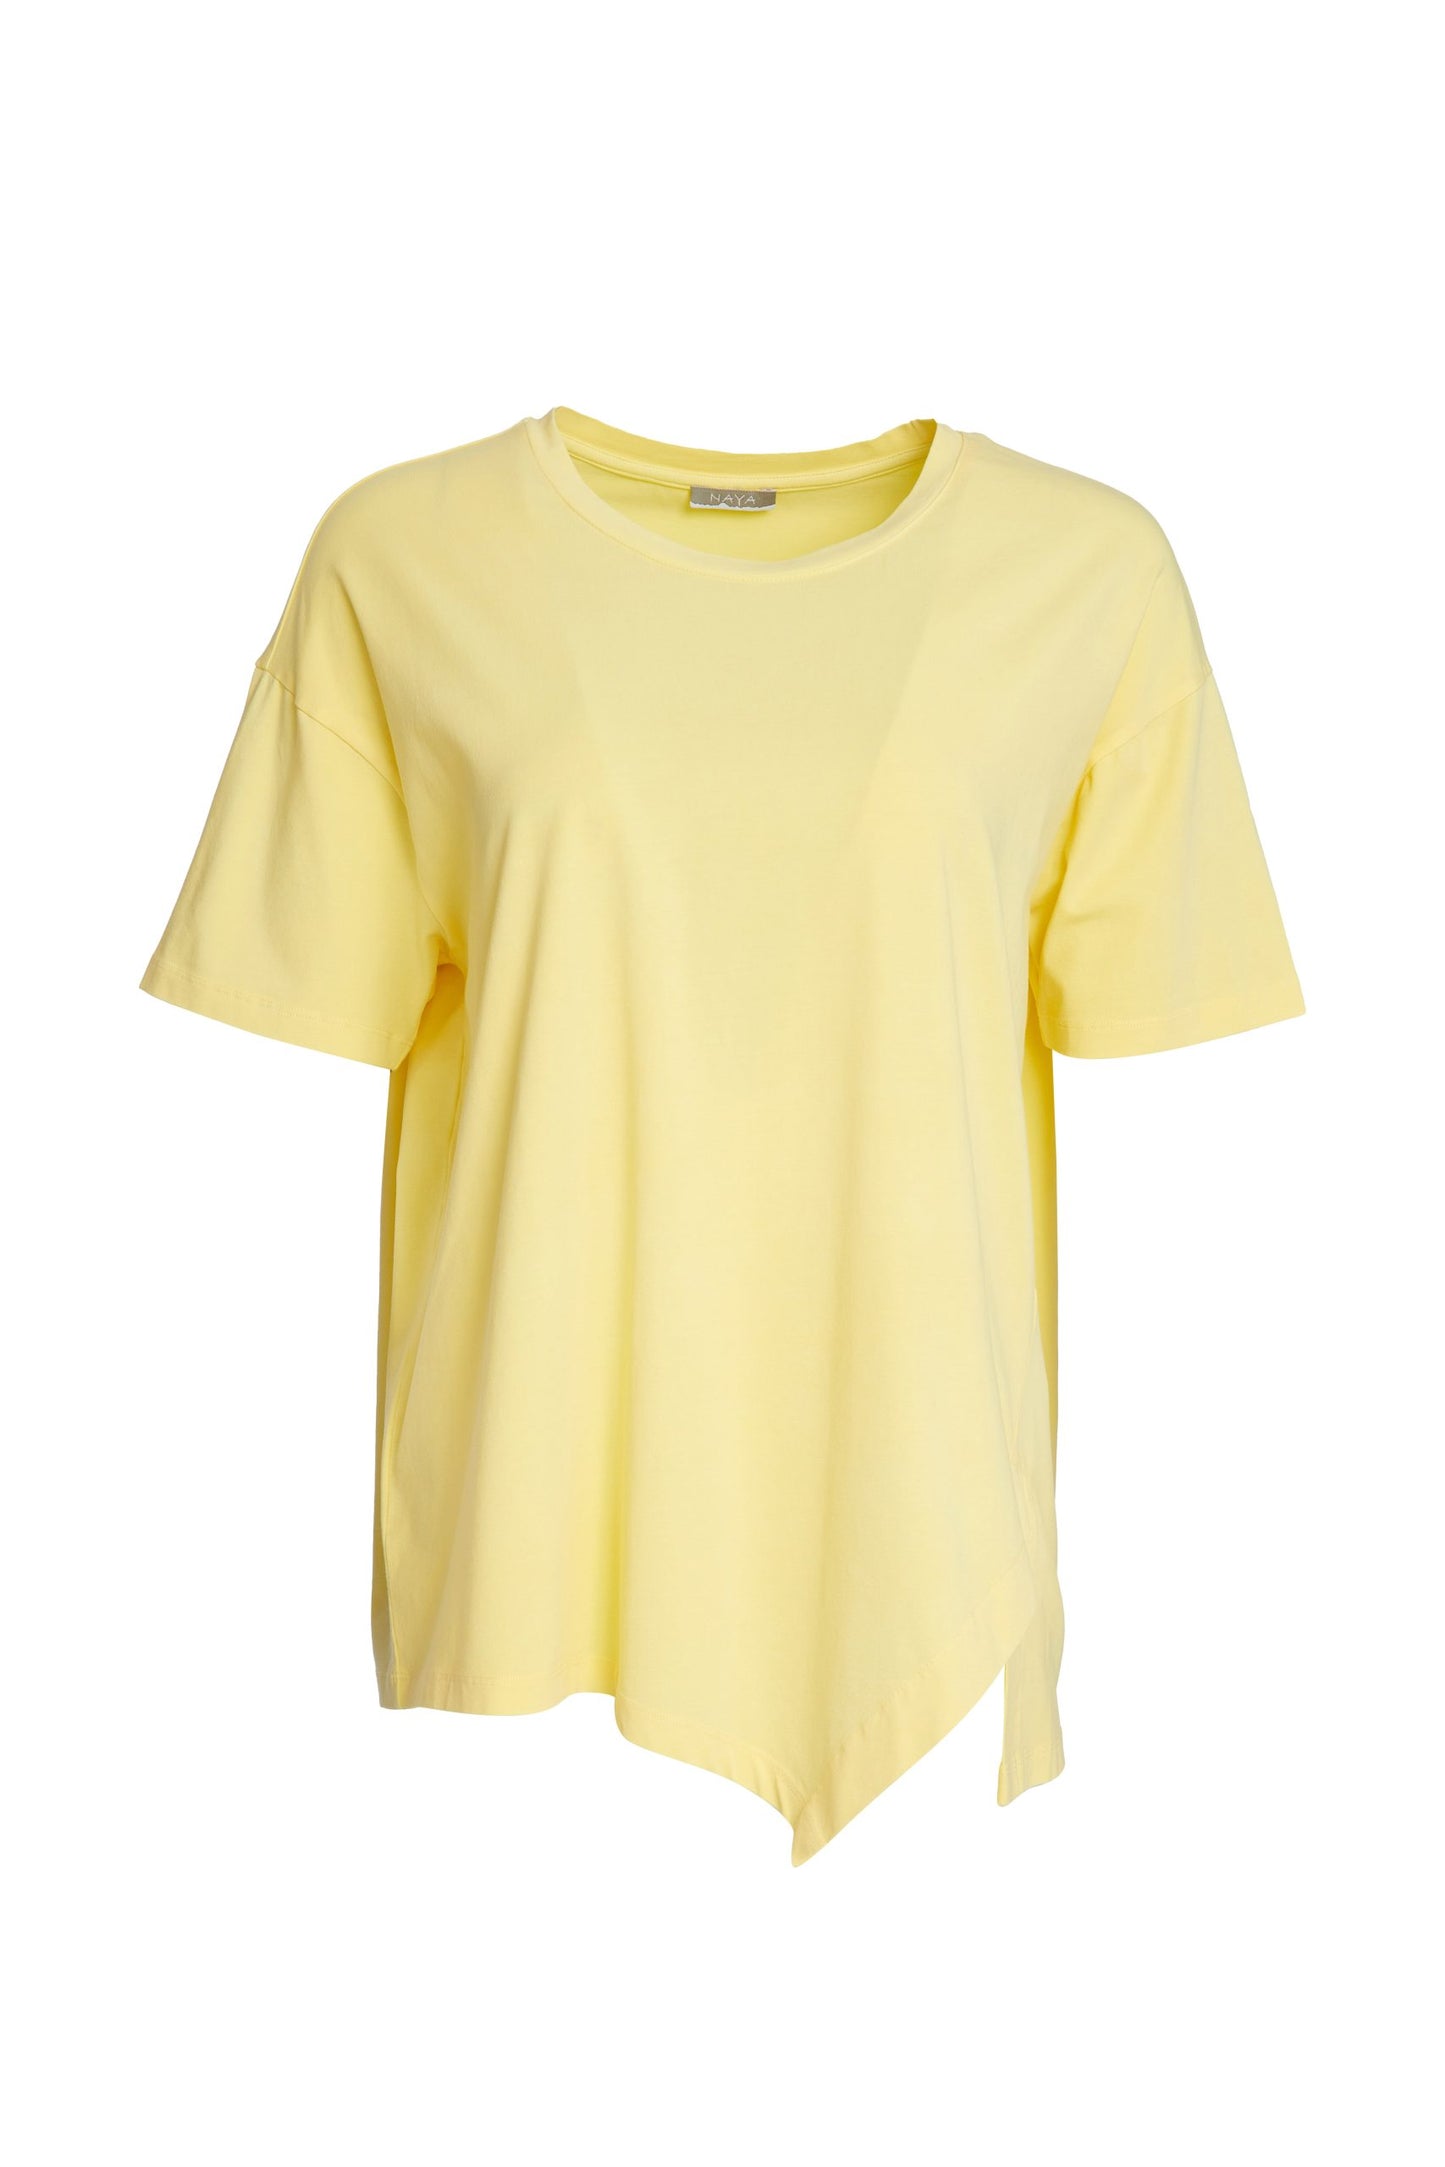 Naya Tee Shirt lemon - Maya Maya Ltd